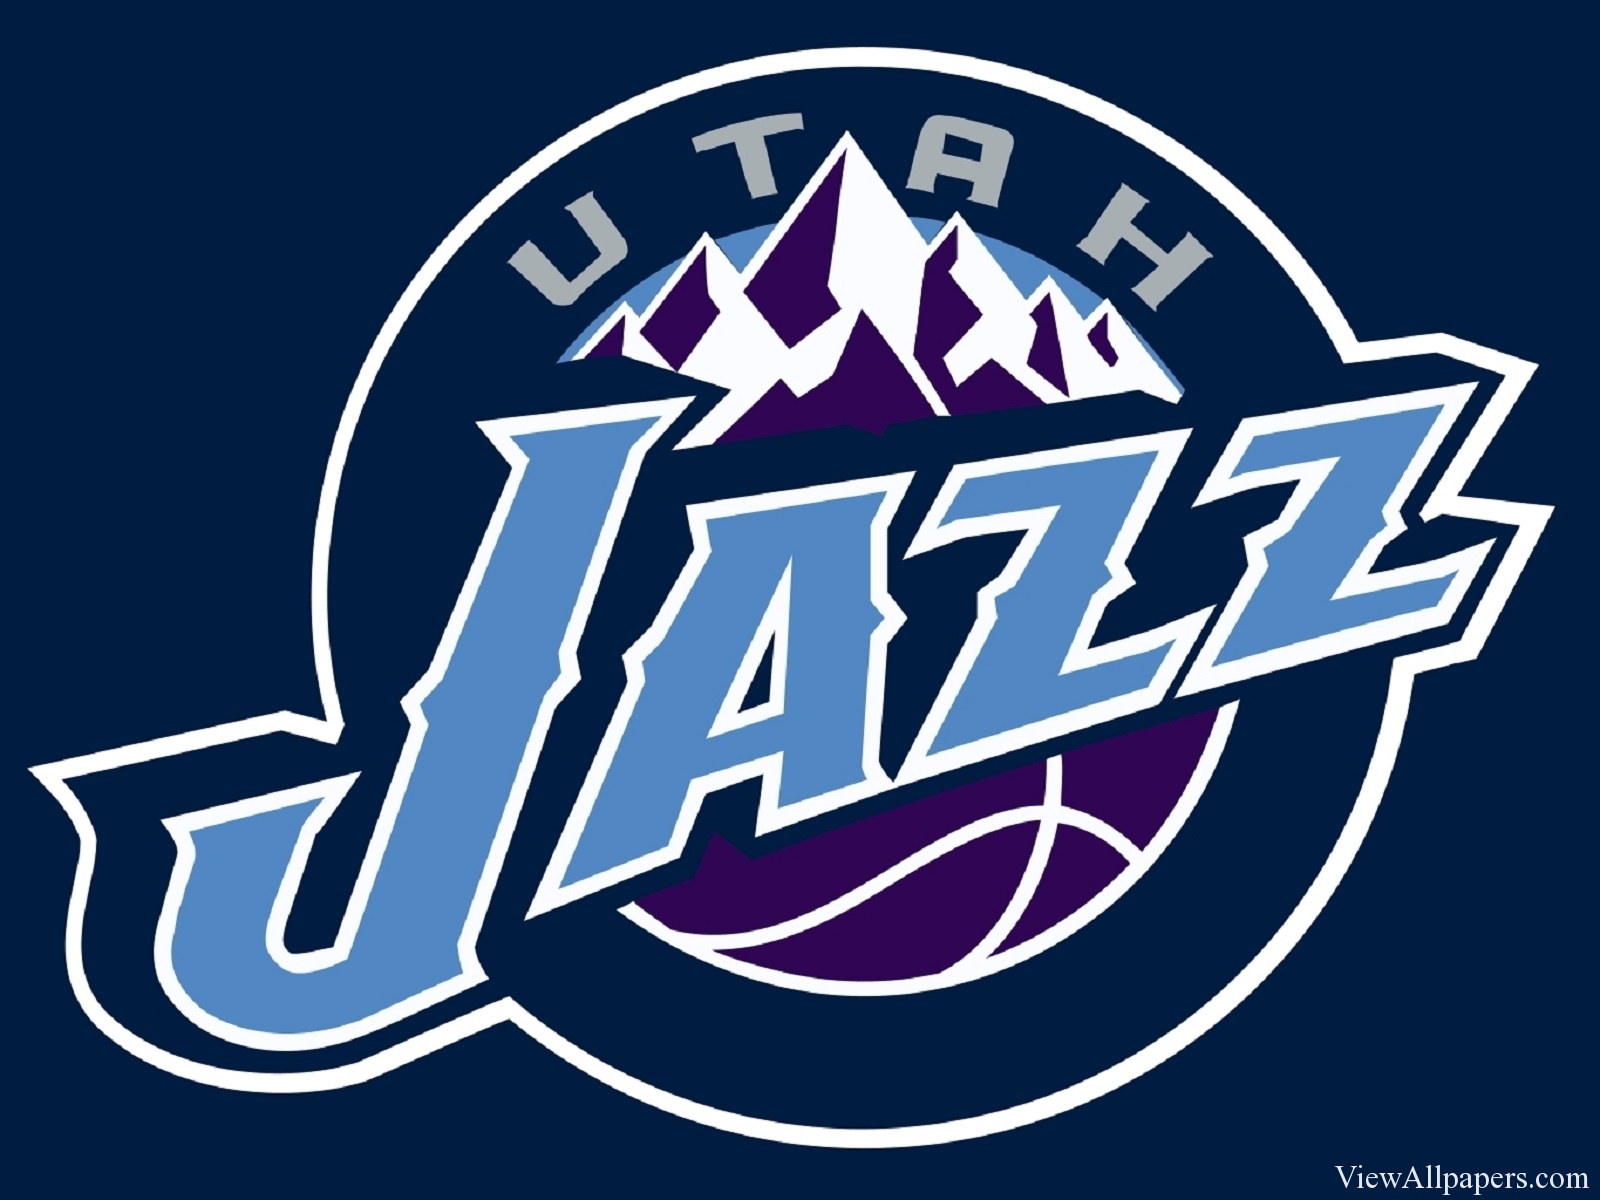 Wallpaper Utah Jazz Logo For Pc Puters Desktop